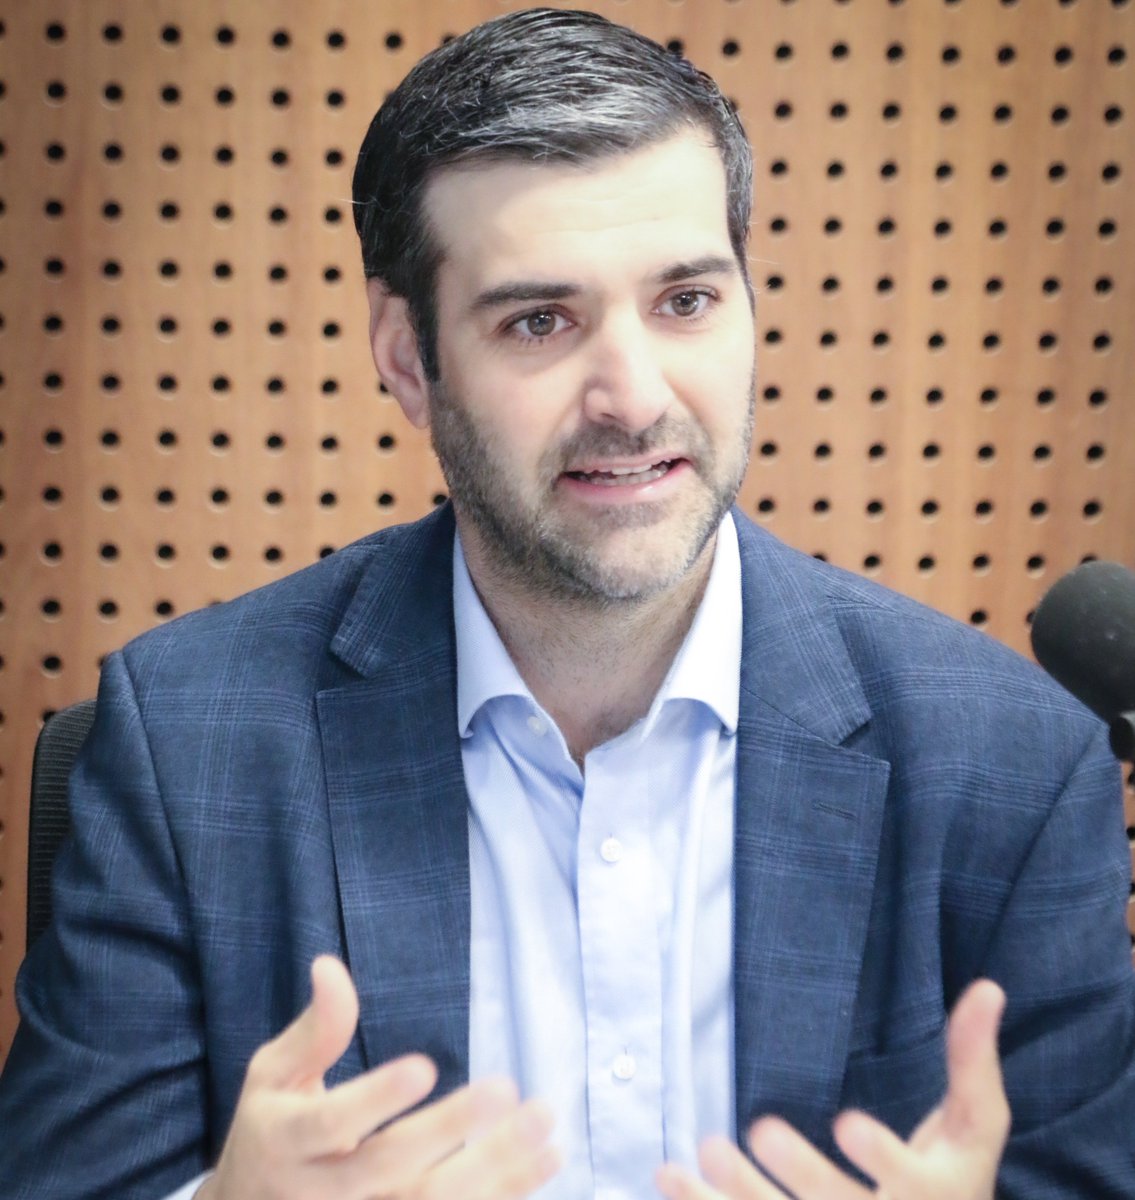 AHORA → El ministro del Interior Nicolás Martinelli en los estudios de La Pecera. 📻 101.9 FM 📲 azulfm.com.uy